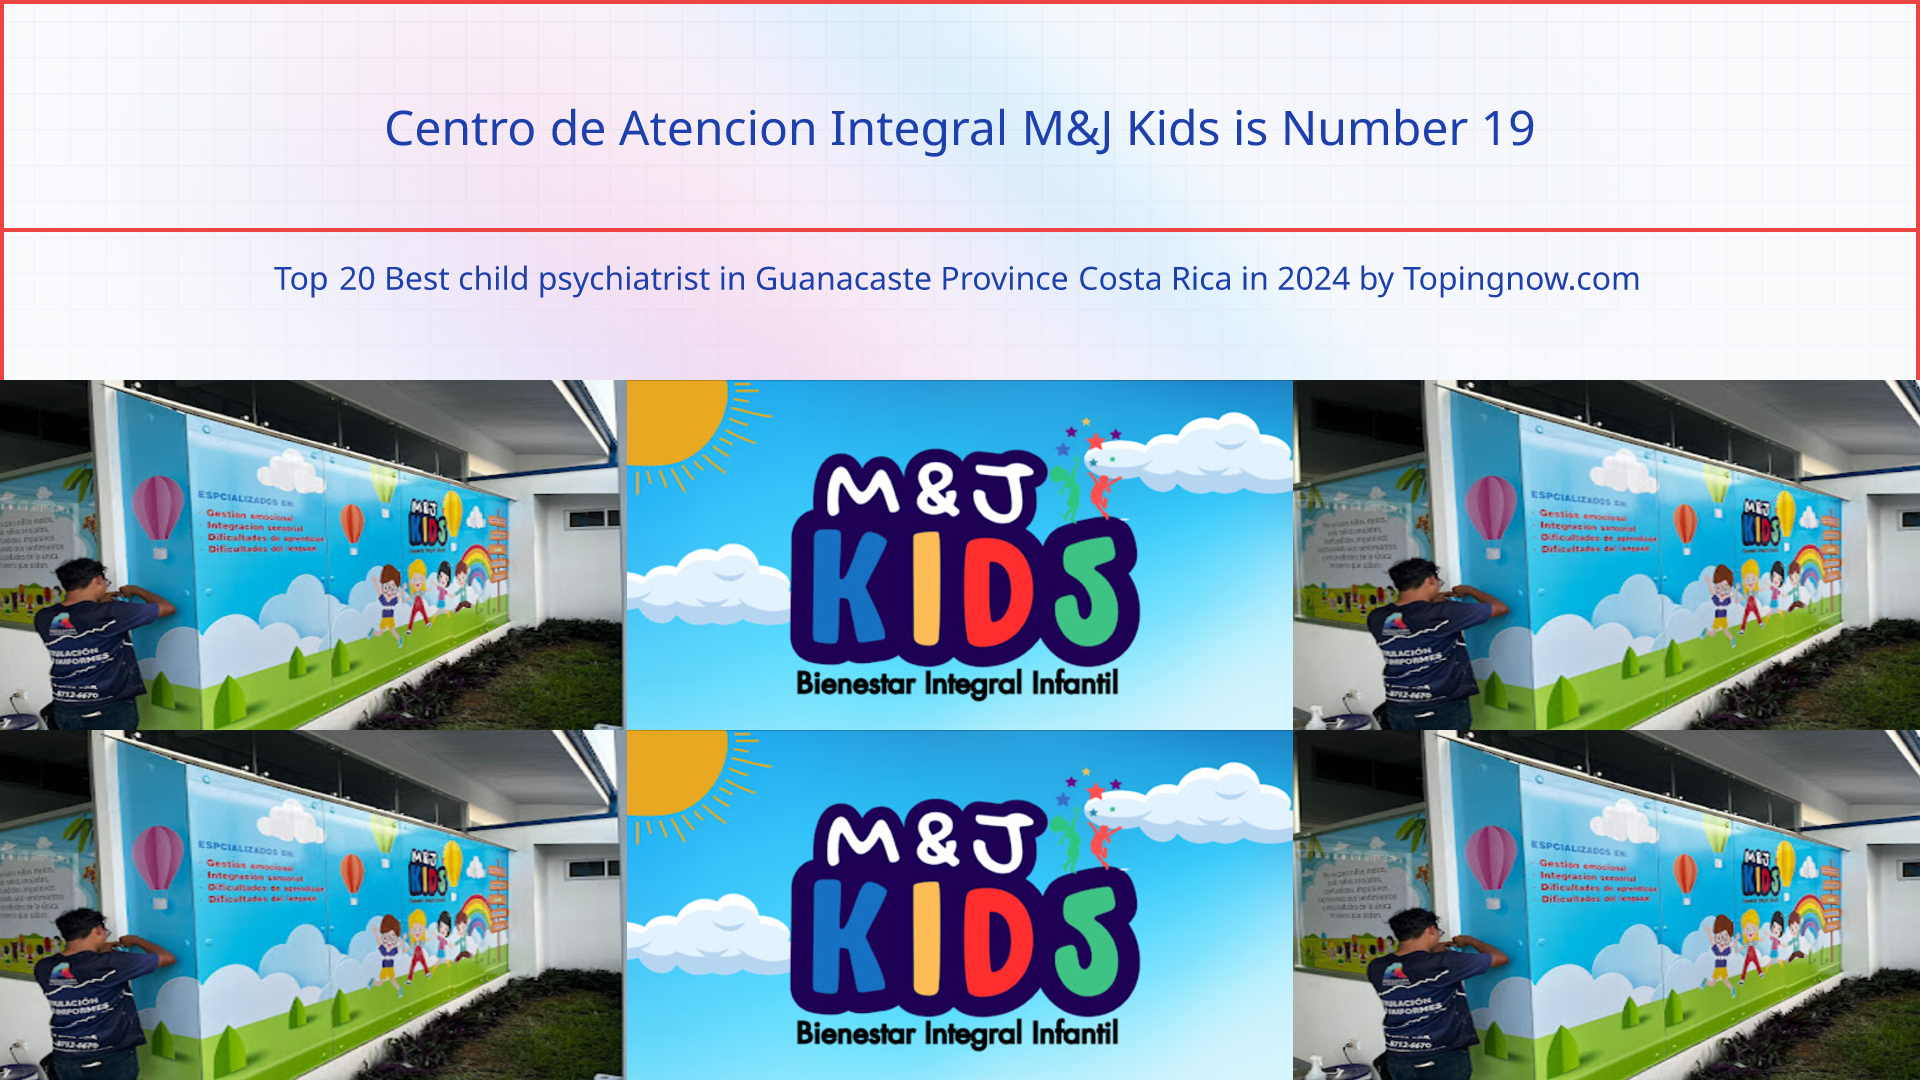 Centro de Atencion Integral M&J Kids: Top 20 Best child psychiatrist in Guanacaste Province Costa Rica in 2024